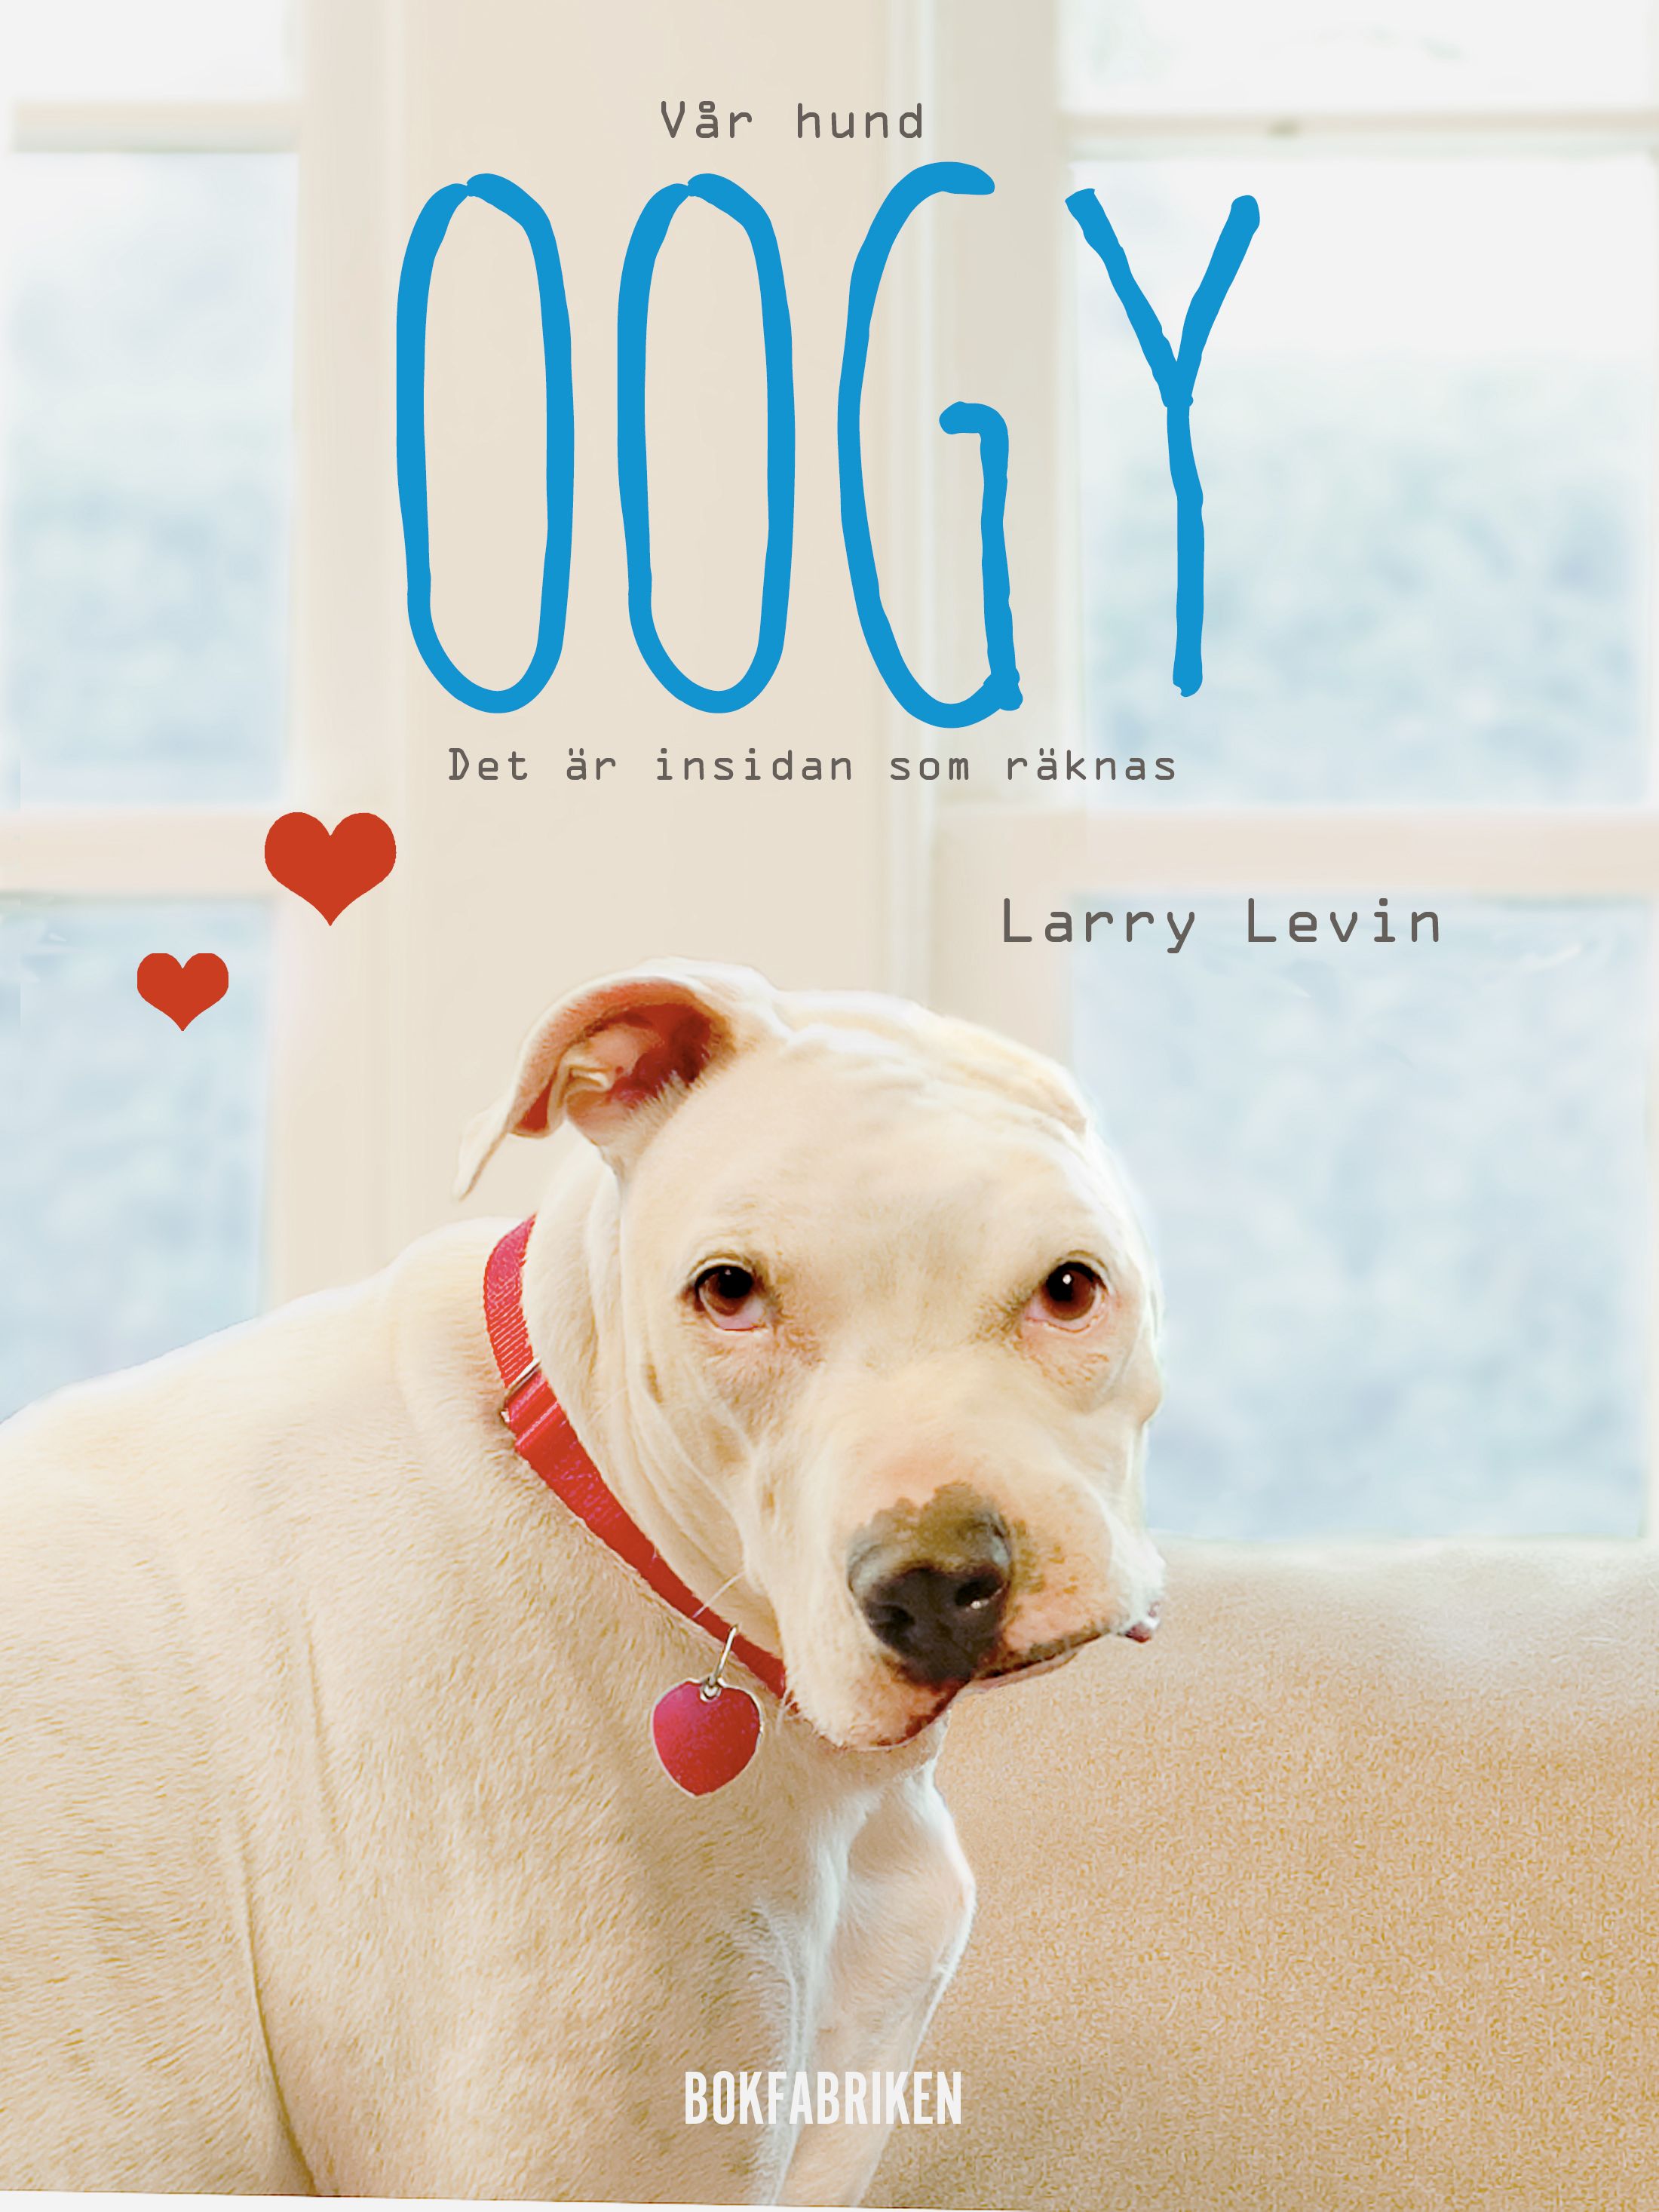 Vår hund Oogy : Det är insidan som räknas, eBook by Larry Levin